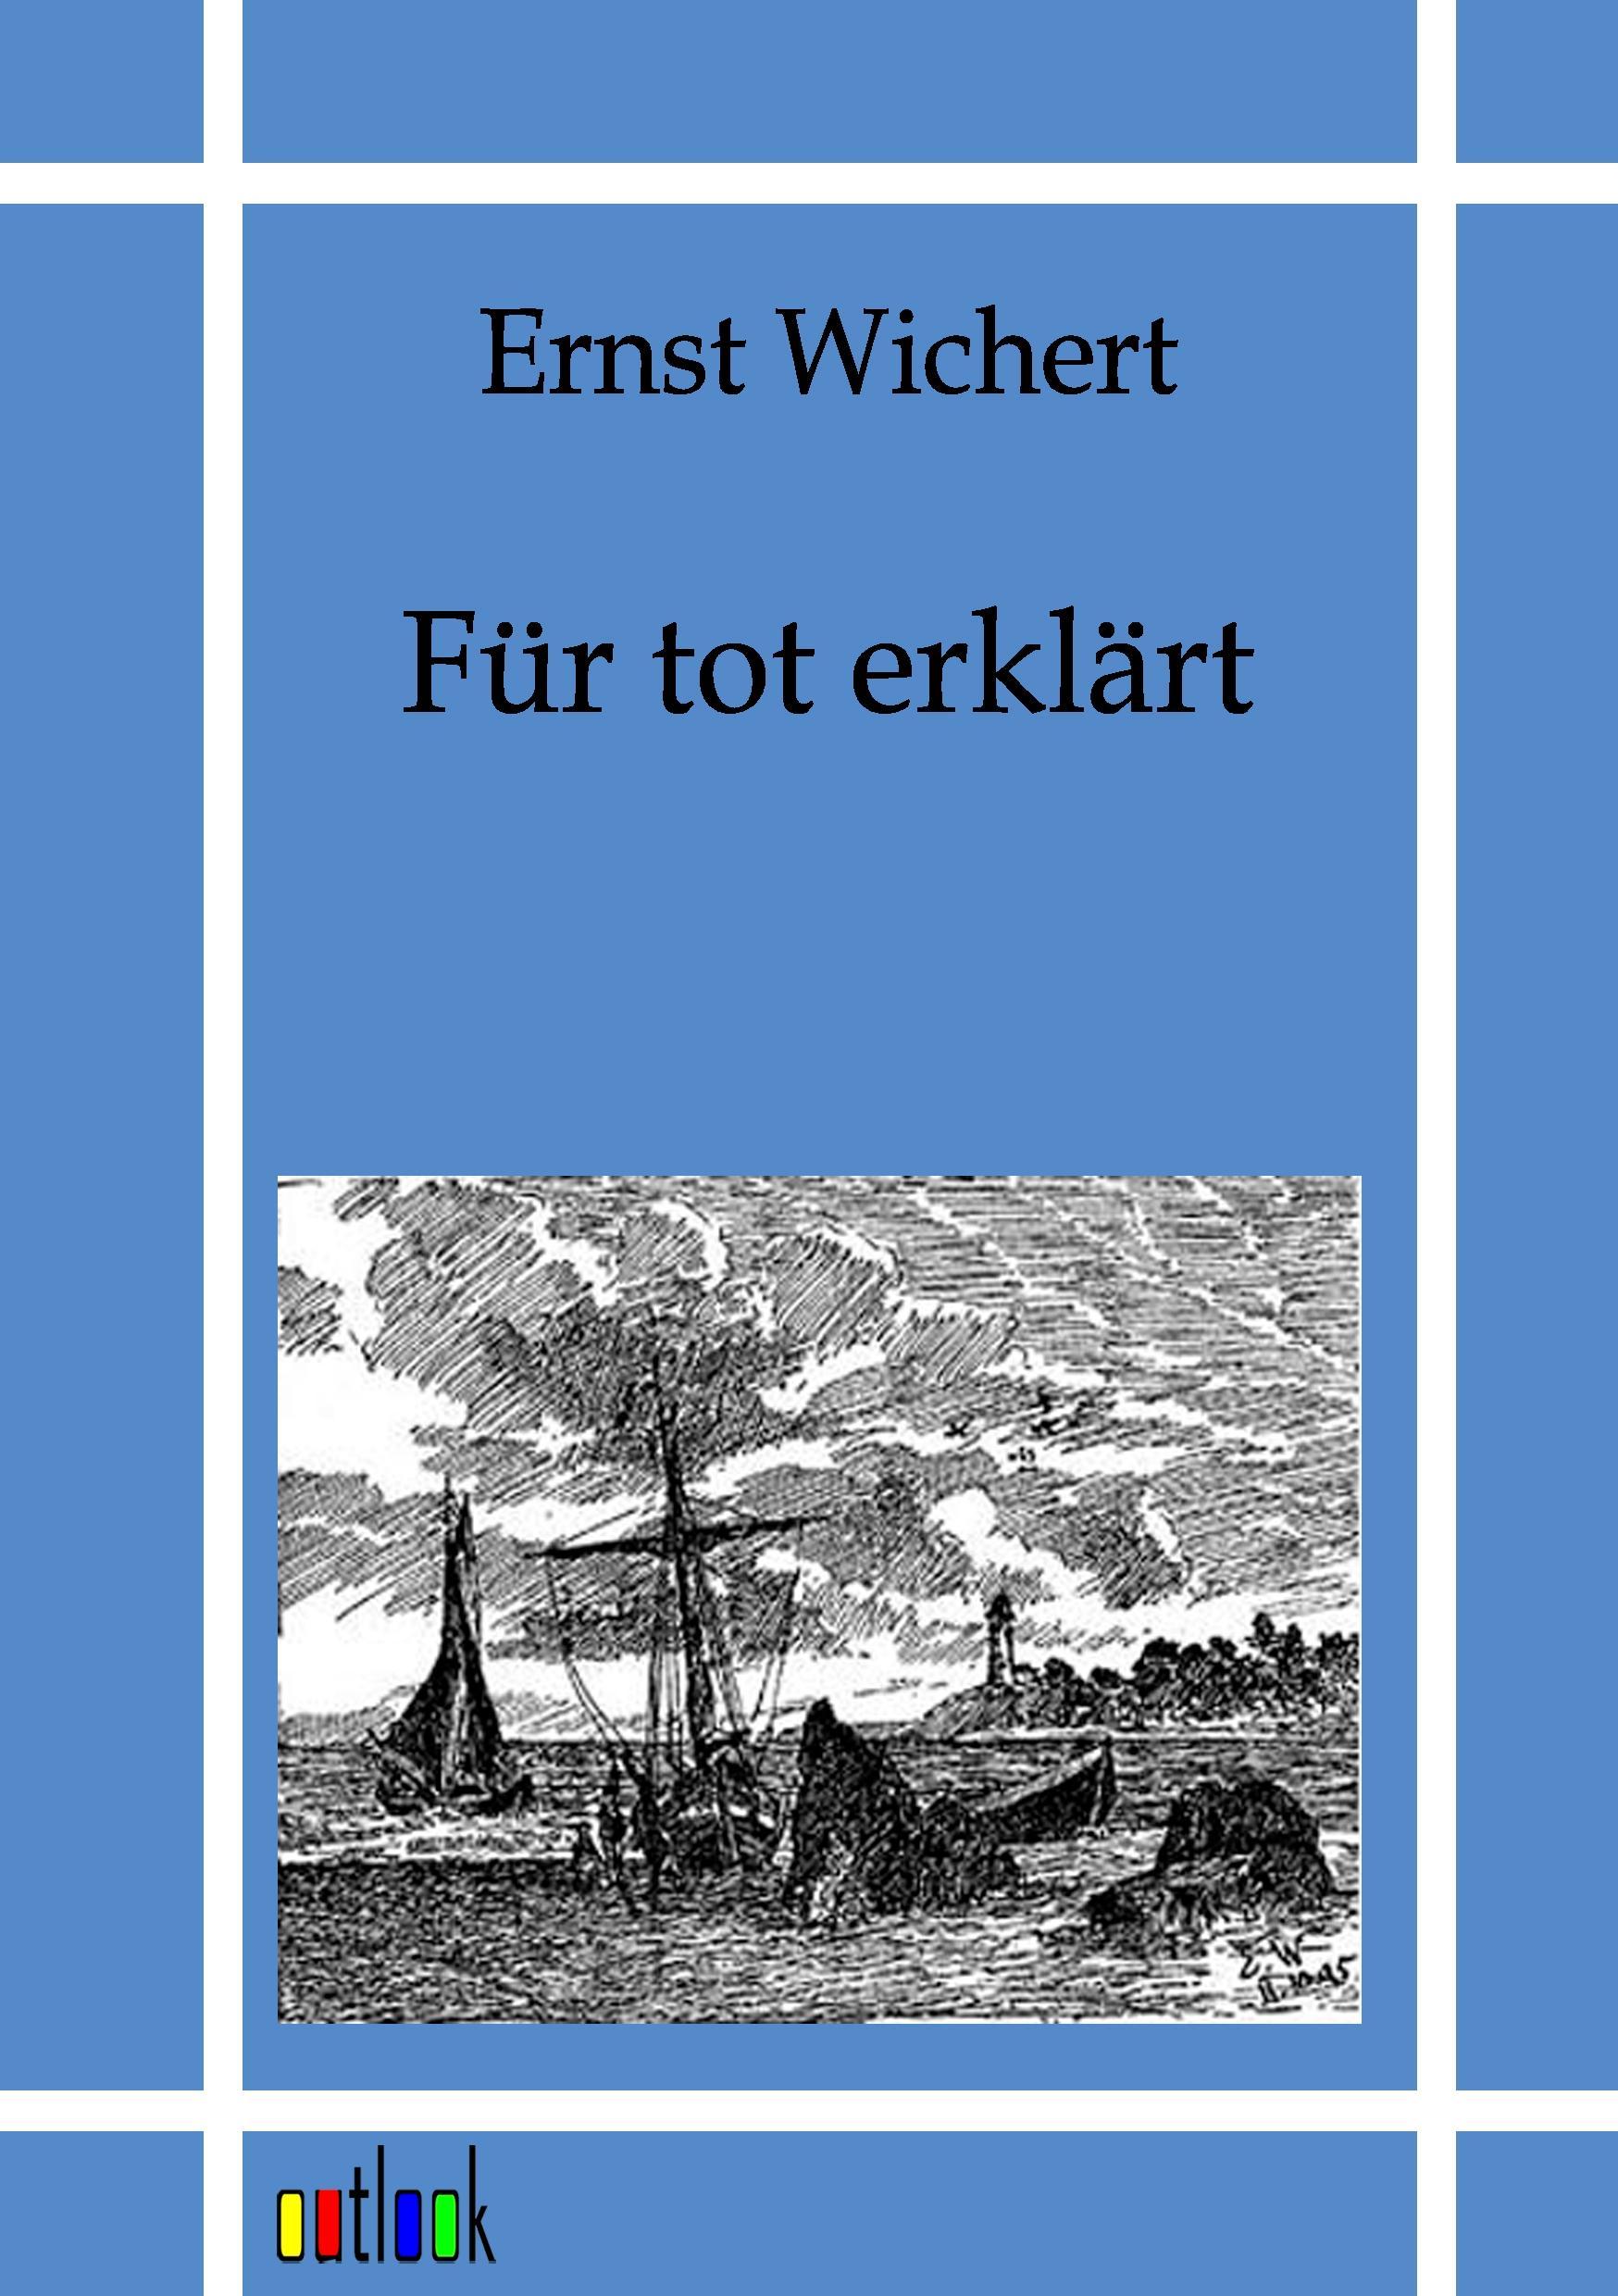 Fuer tot erklaert - Wichert, Ernst